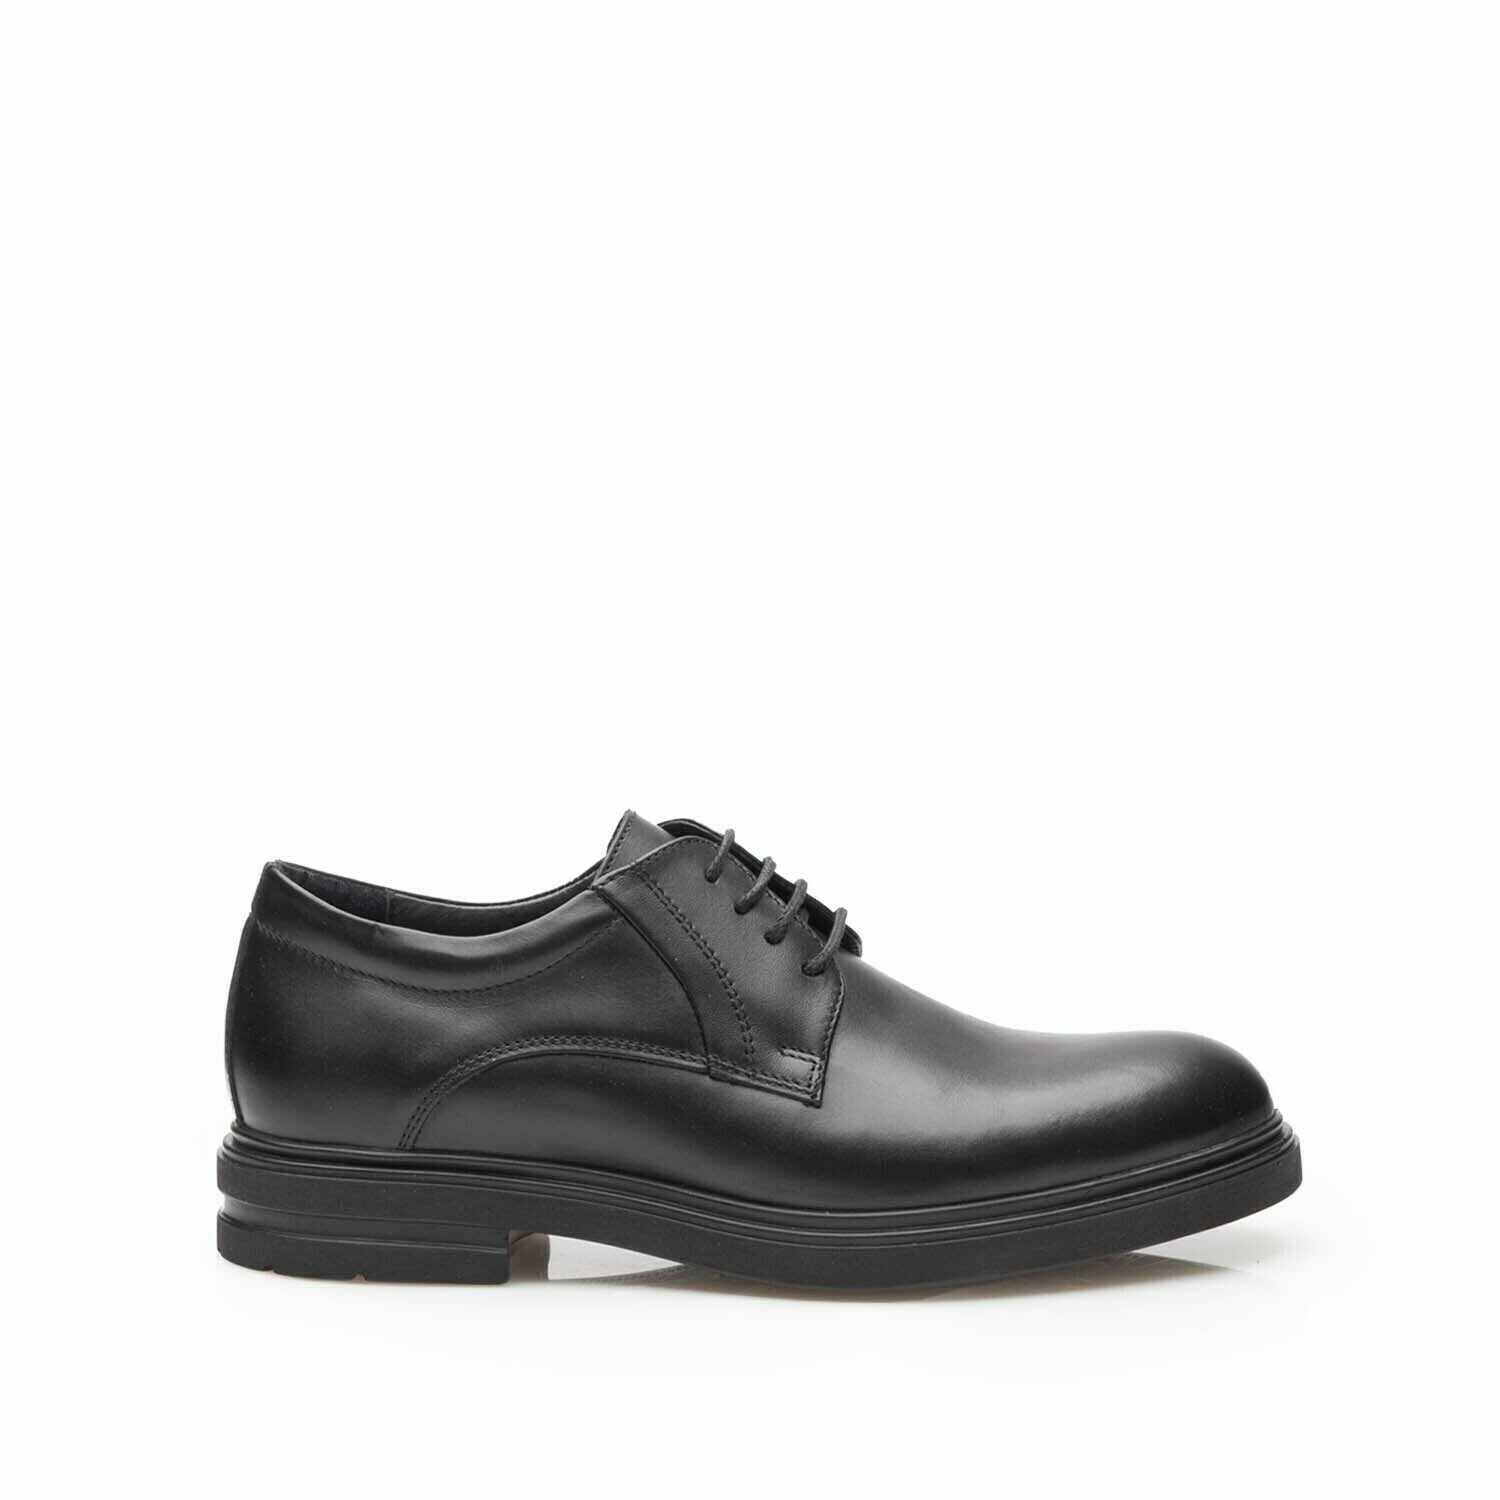 Pantofi casual barbati din piele naturala Leofex - 998 Negru Box